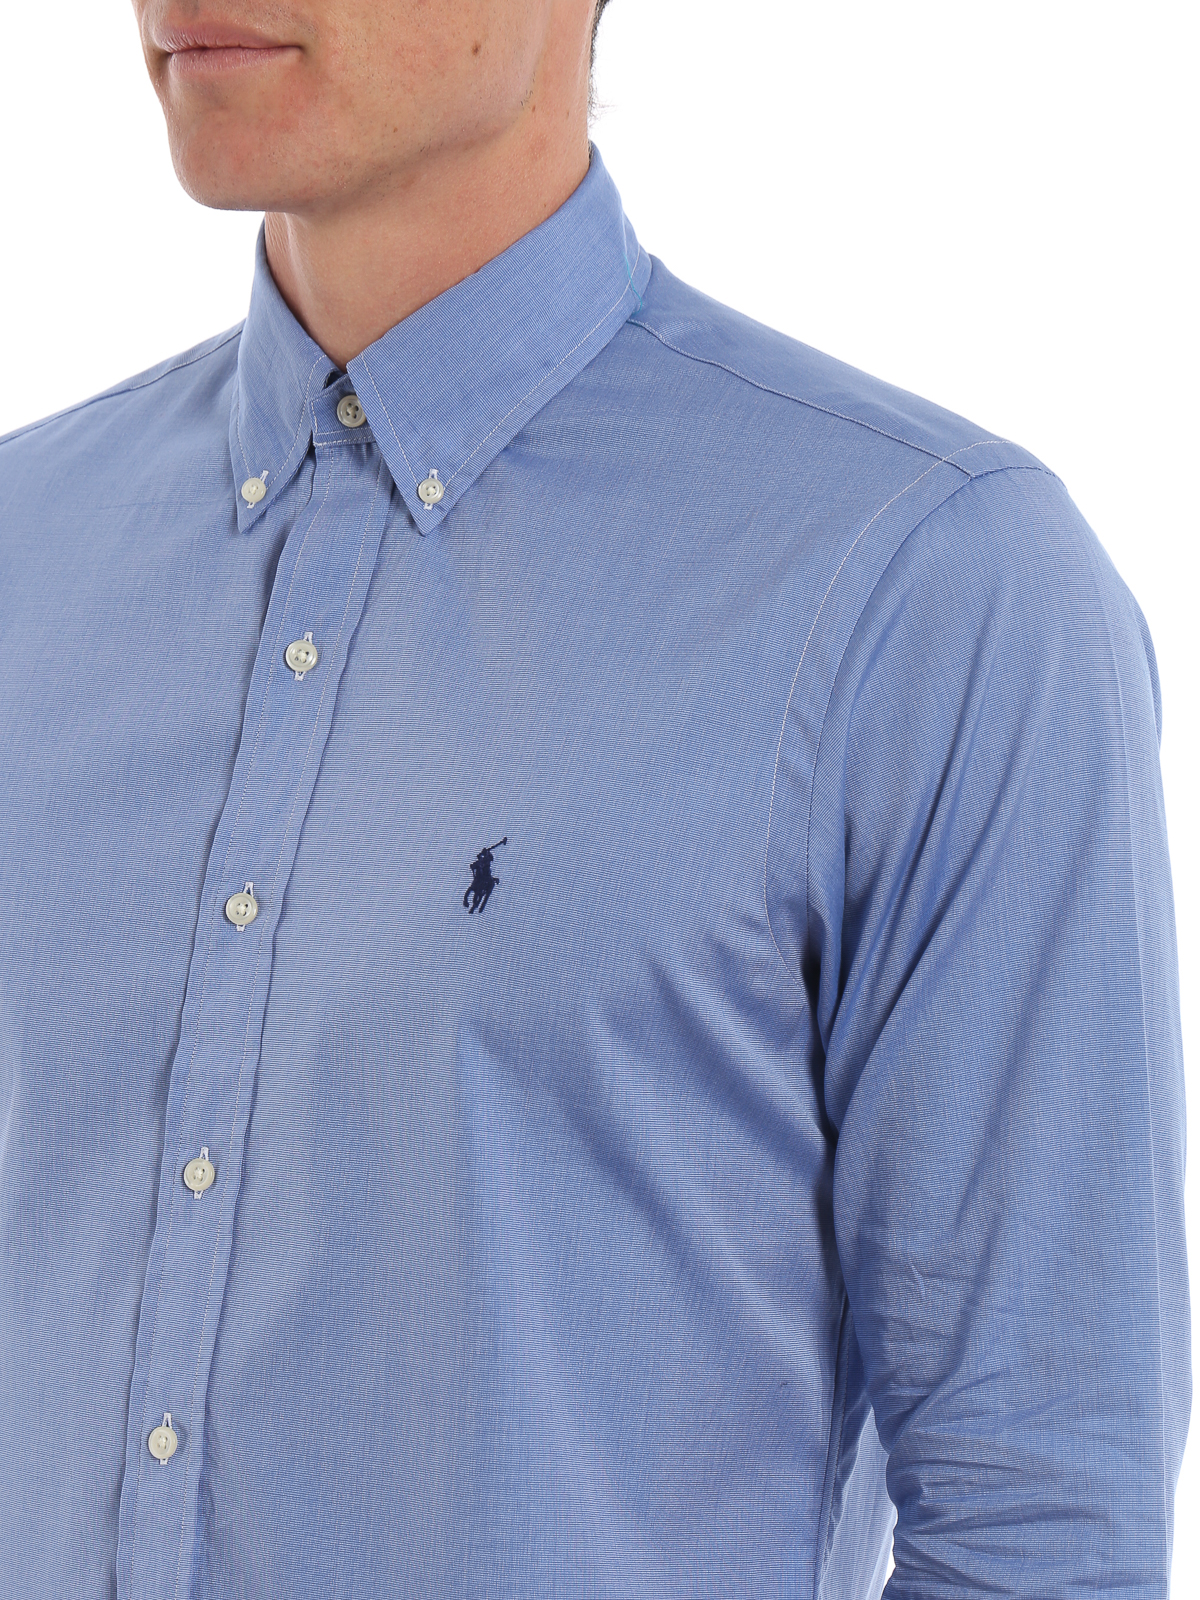 Shirts Polo Ralph Lauren - Light blue cotton b/d shirt - 710705967004